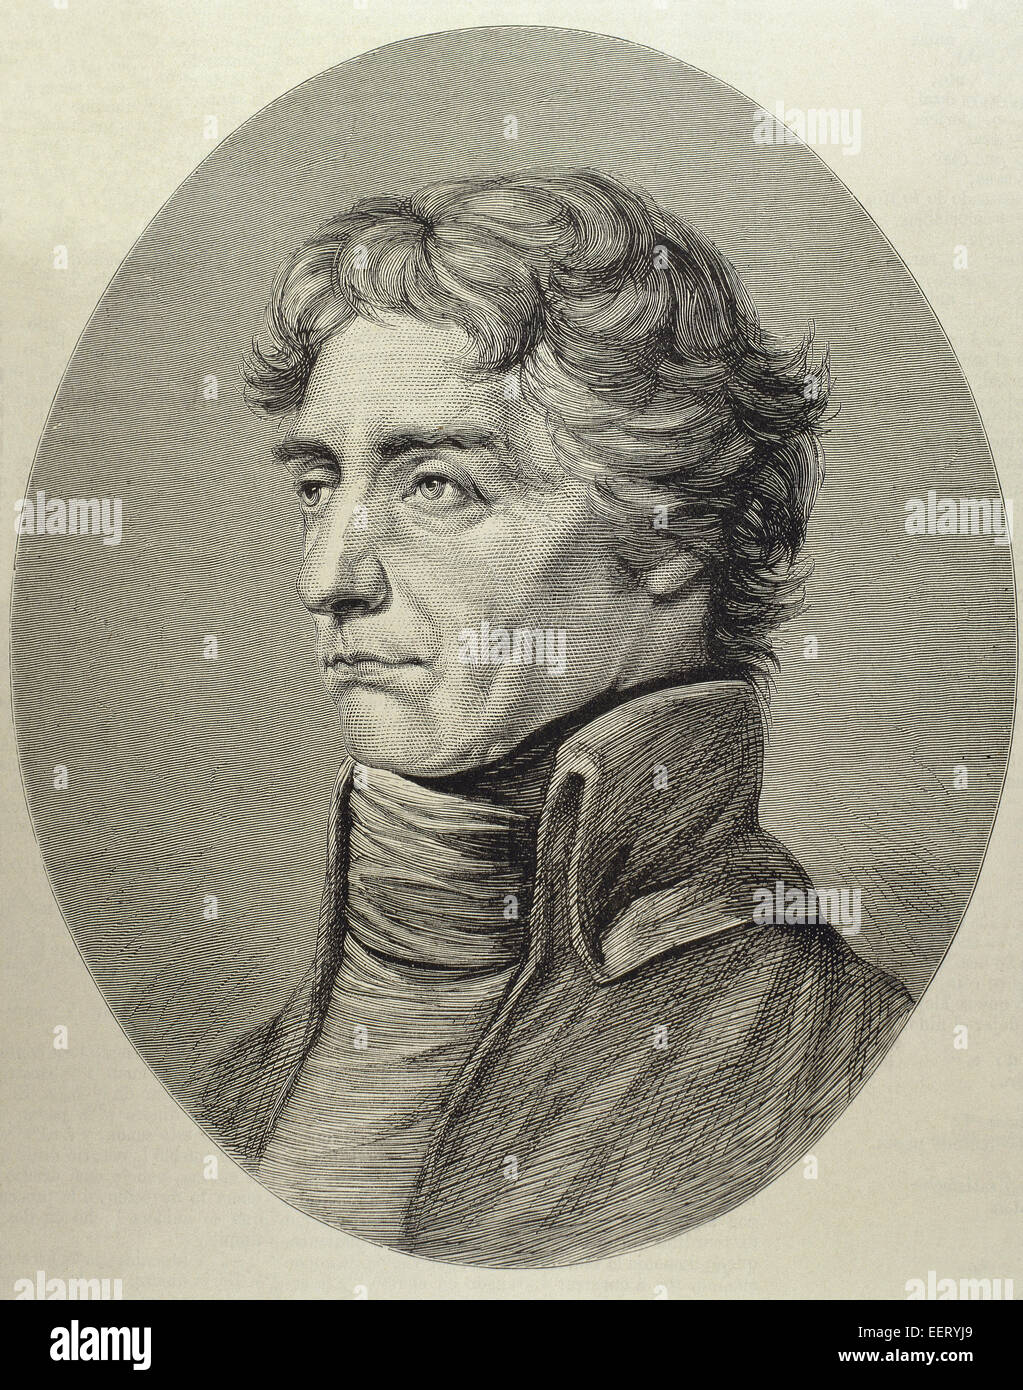 Horatio Nelson (1758-1805). Britischer Vizeadmiral. Porträt. Gravur. Stockfoto